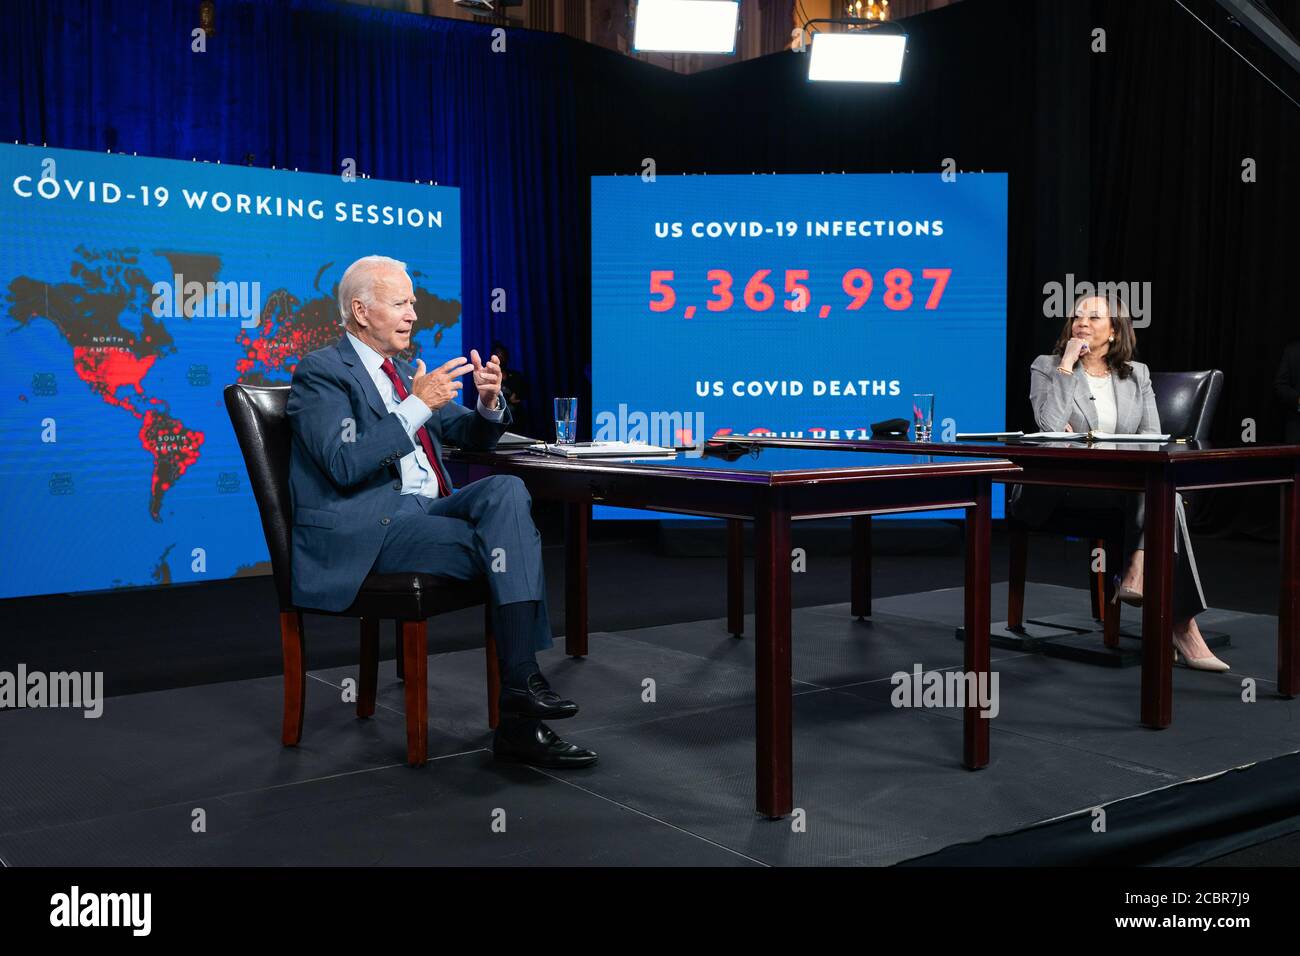 WILMINGTON, DELAWARE, EE.UU. - 13 de agosto de 2020 - el candidato presidencial de EE.UU. Joe Biden con Kamala Harris habla en la reunión informativa sobre el estado de COVID-19 en Wilming Foto de stock